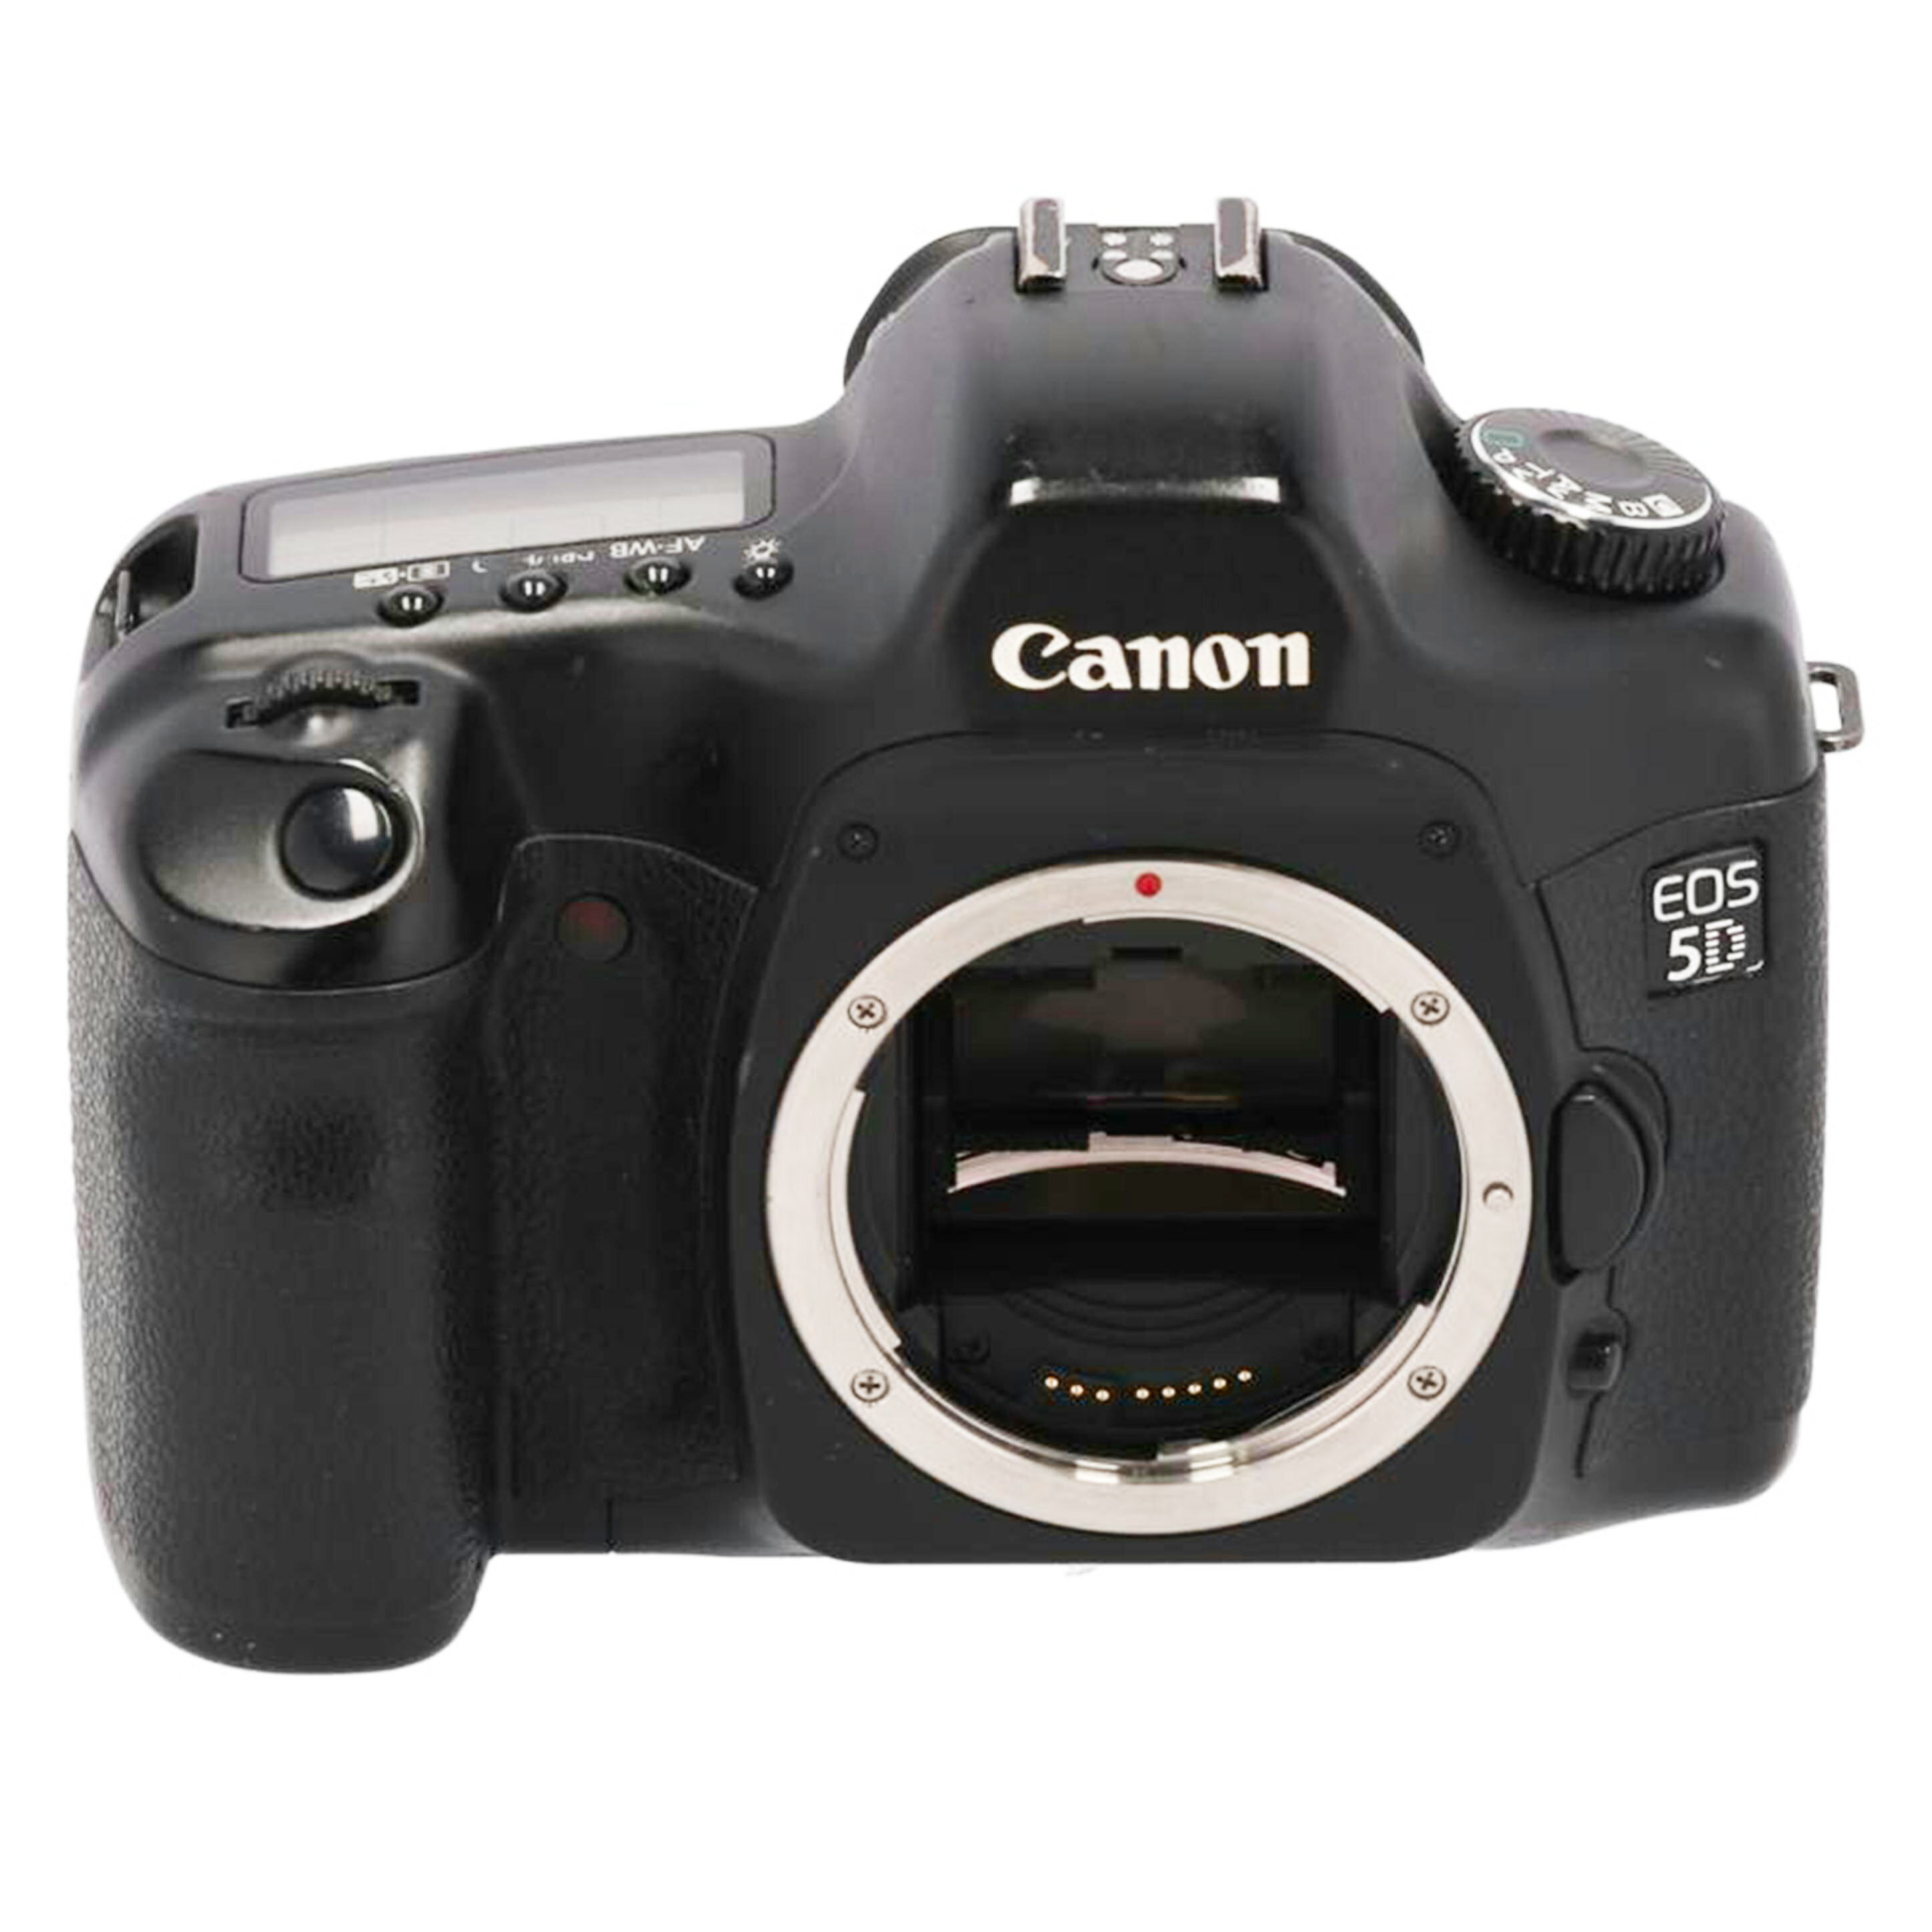 Canon キャノン/デジタル一眼/EOS 5D ボディ/---1234/Cランク/05【中古】